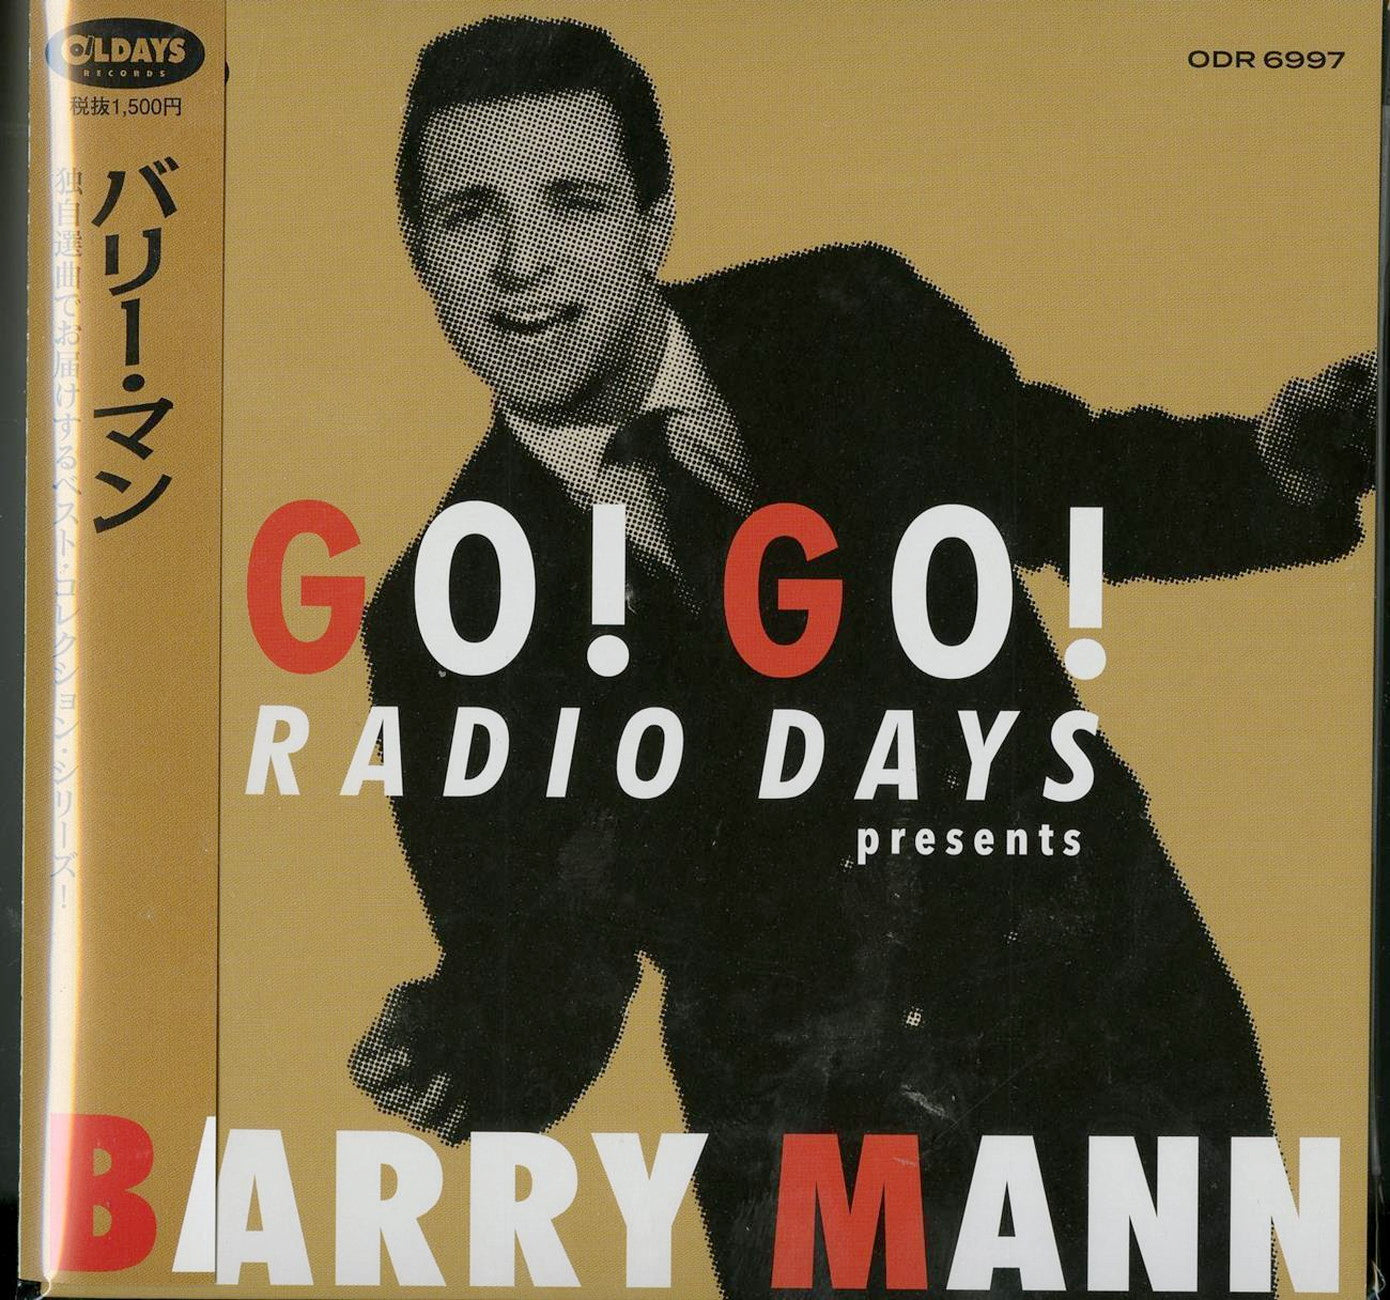 Barry Mann - Go! Go! Radio Days Presents Barry Mann - Japan Mini